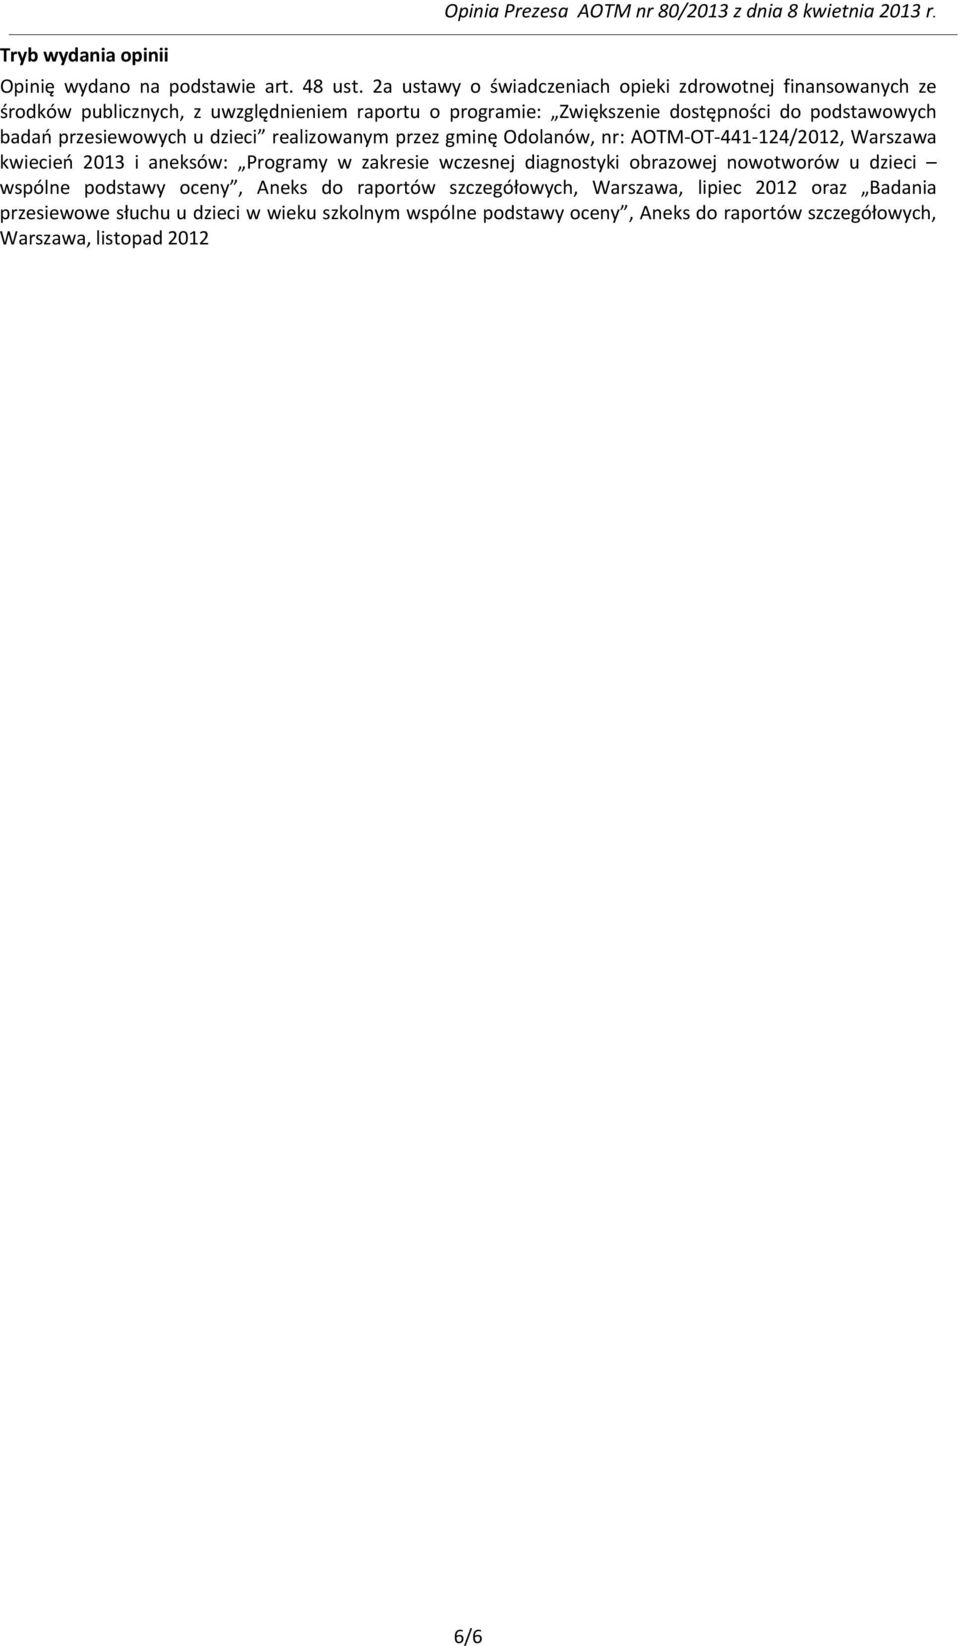 przesiewowych u dzieci realizowanym przez gminę Odolanów, nr: AOTM-OT-441-124/2012, Warszawa kwiecień 2013 i aneksów: Programy w zakresie wczesnej diagnostyki obrazowej